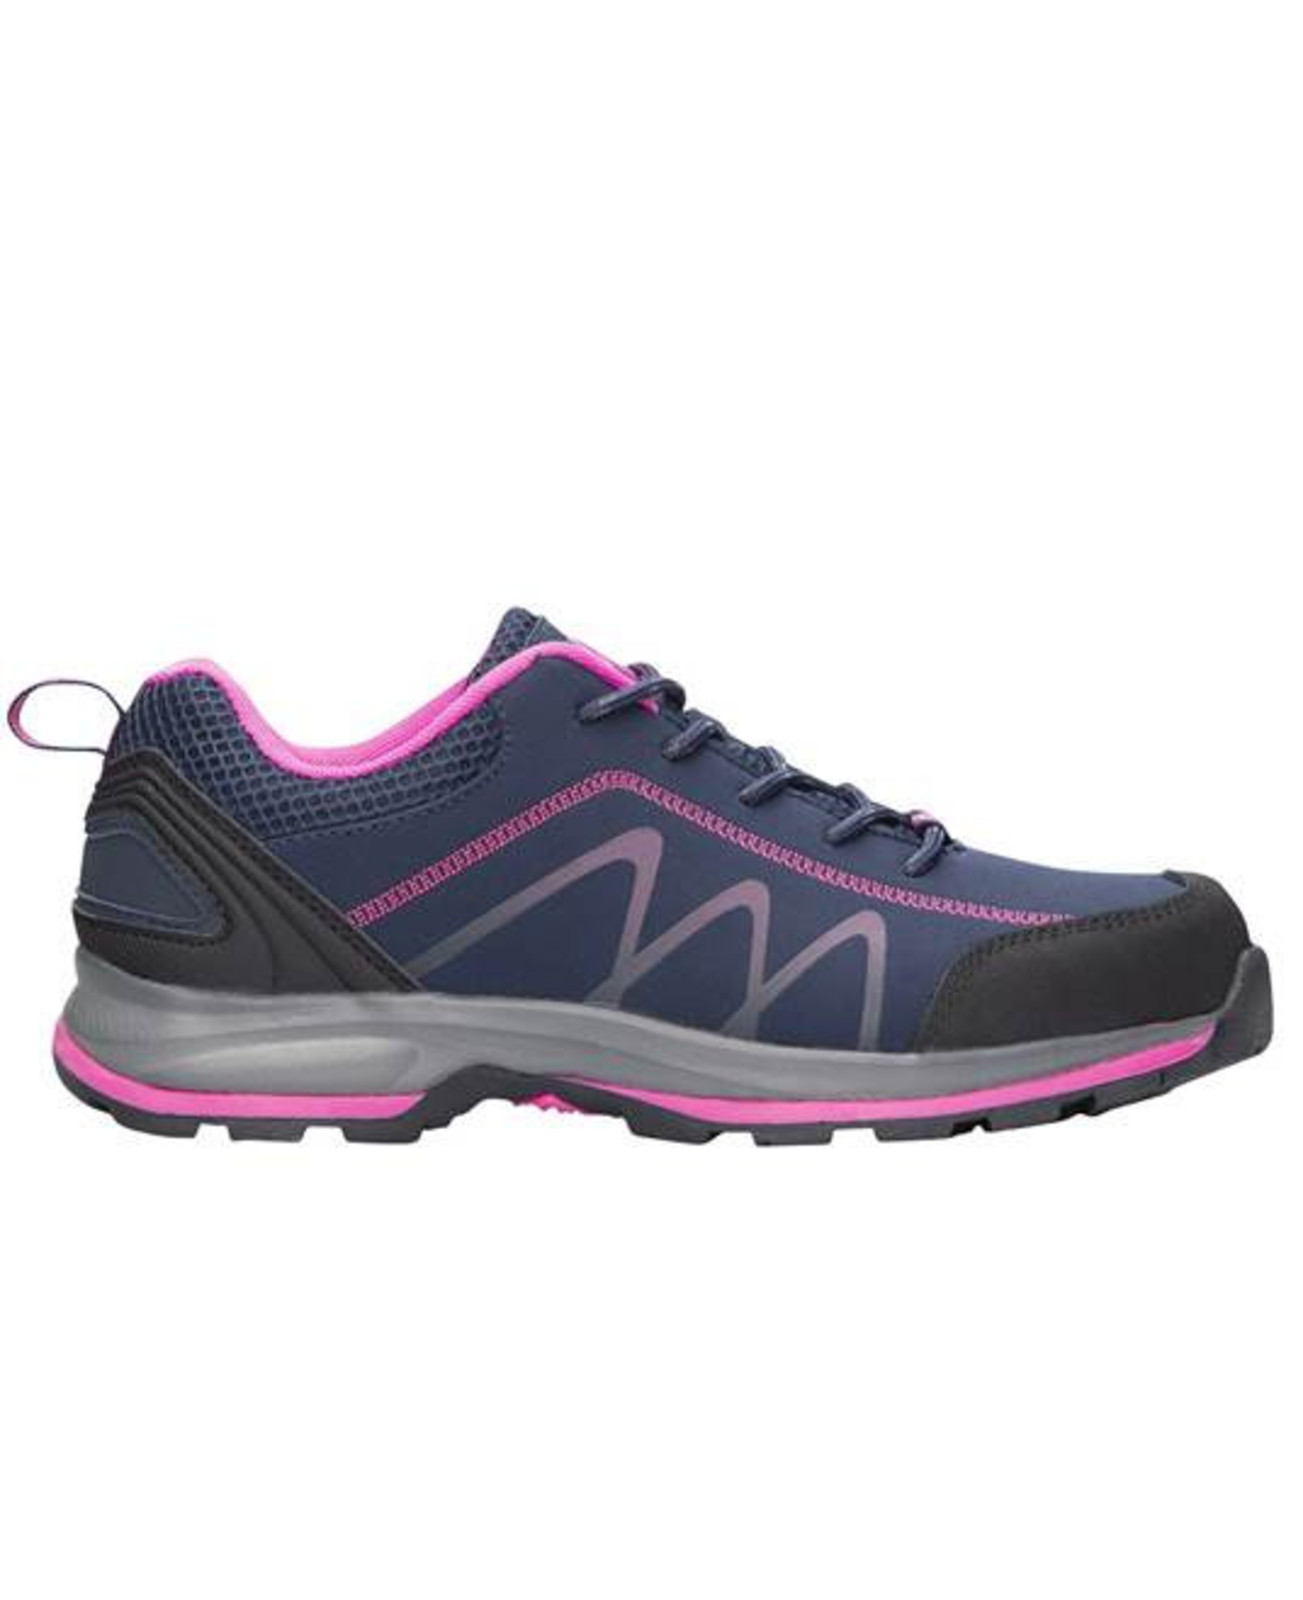 Dámska outdoor softshellová obuv Ardon Bloom - veľkosť: 42, farba: navy lila